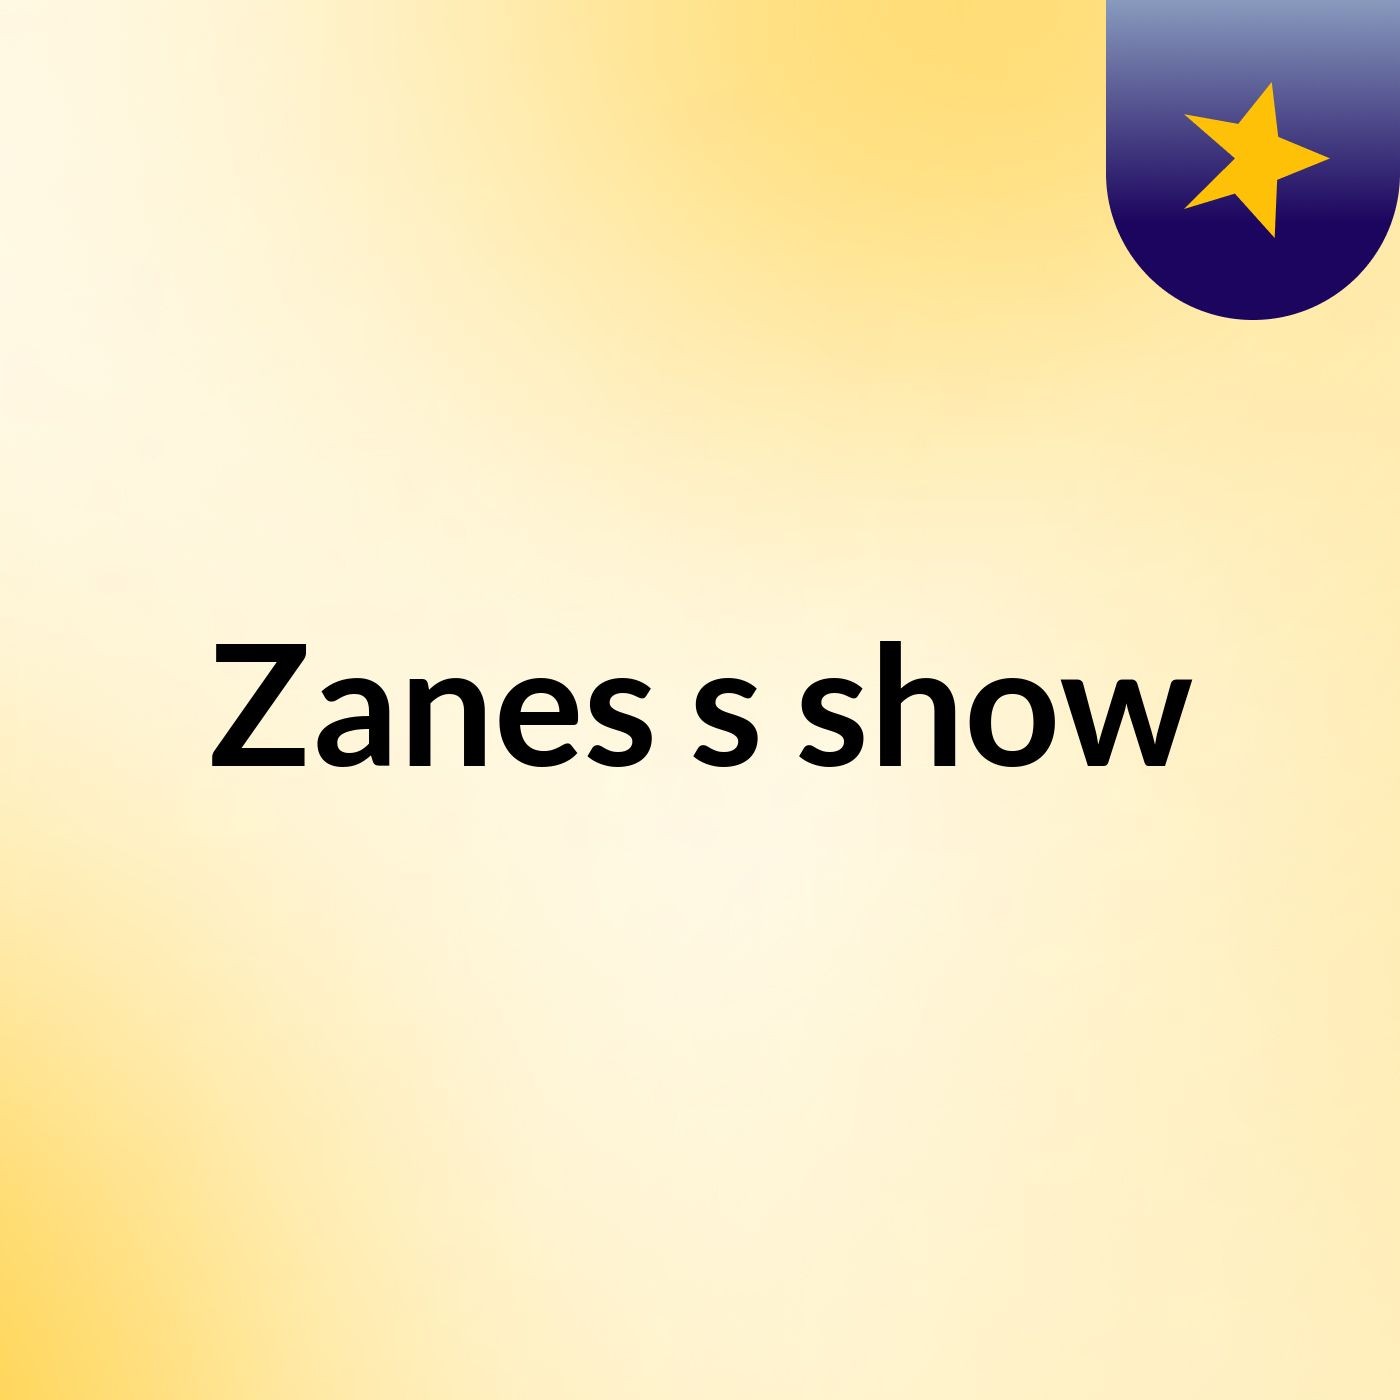 Zanes's show